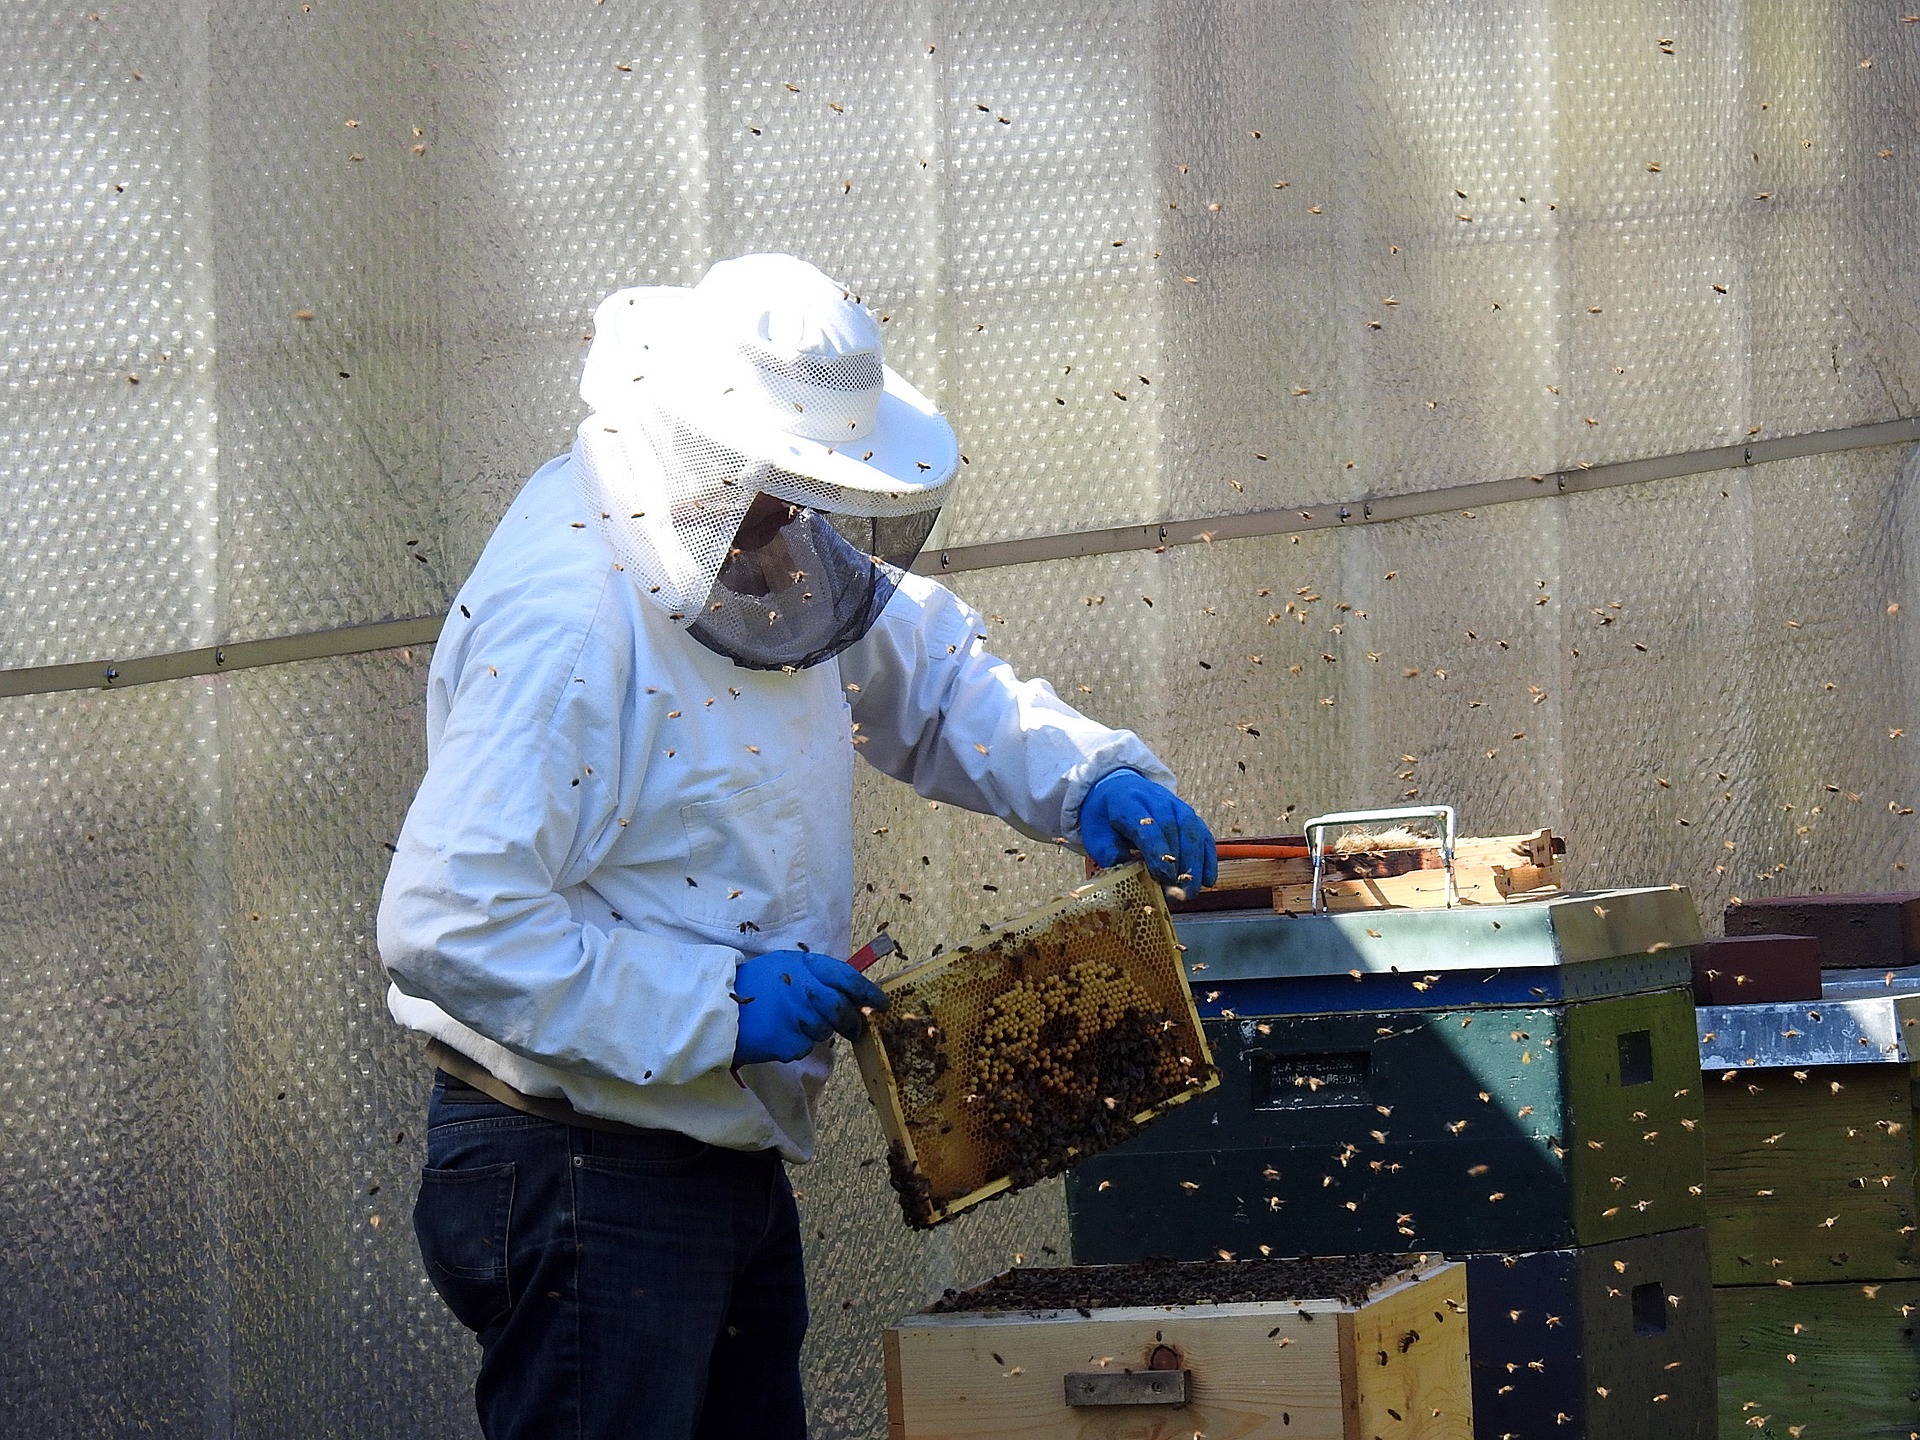 Zniszczył 35 uli i naraził pszczoły na zimowe warunki atmosferyczne